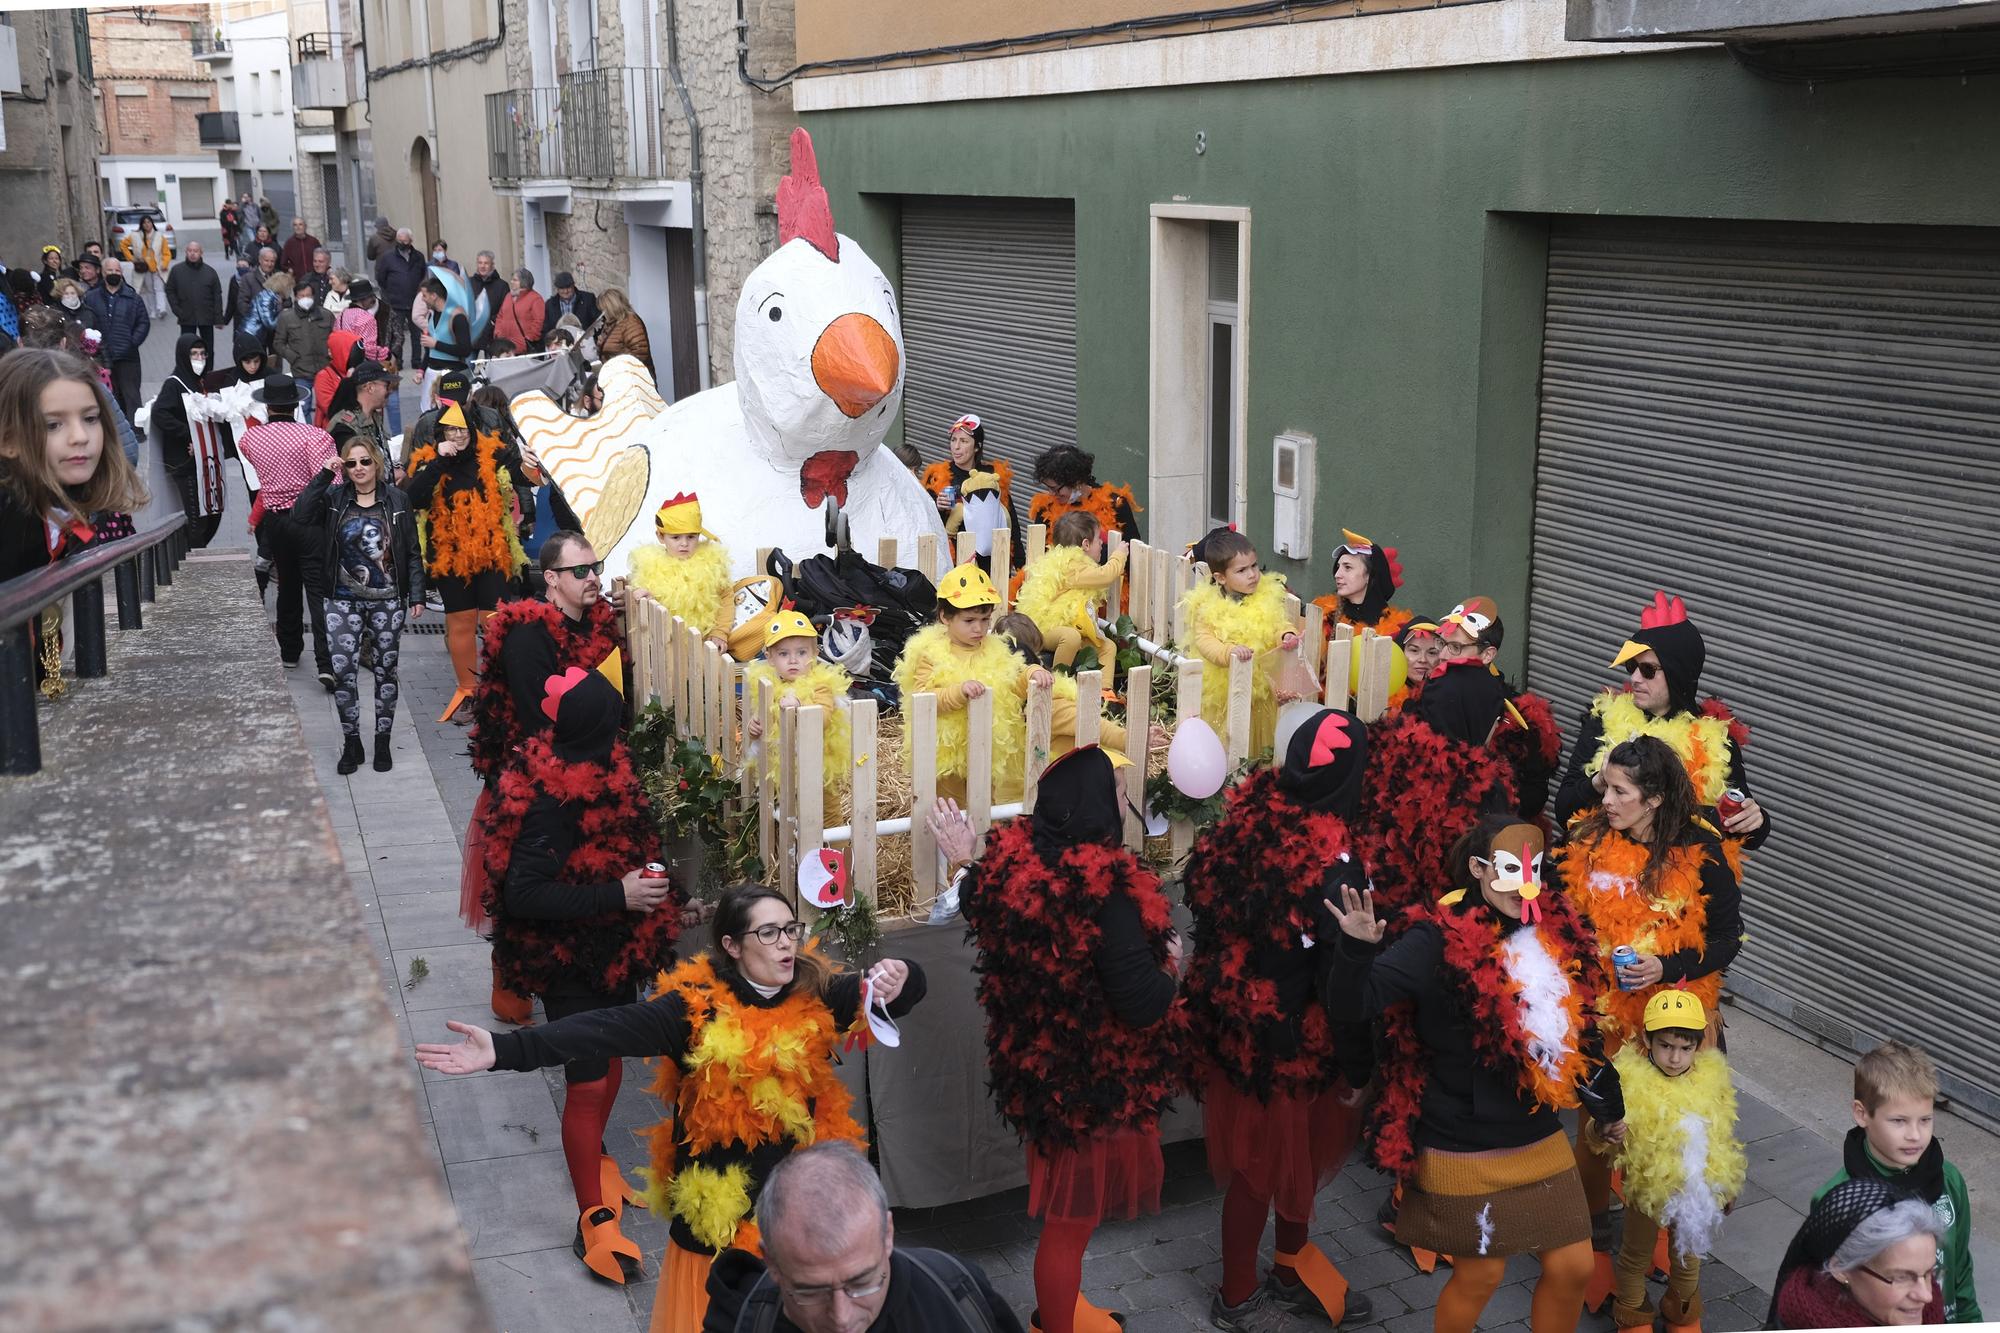 Busca't a les fotos del Carnaval d'Avinyó 2022